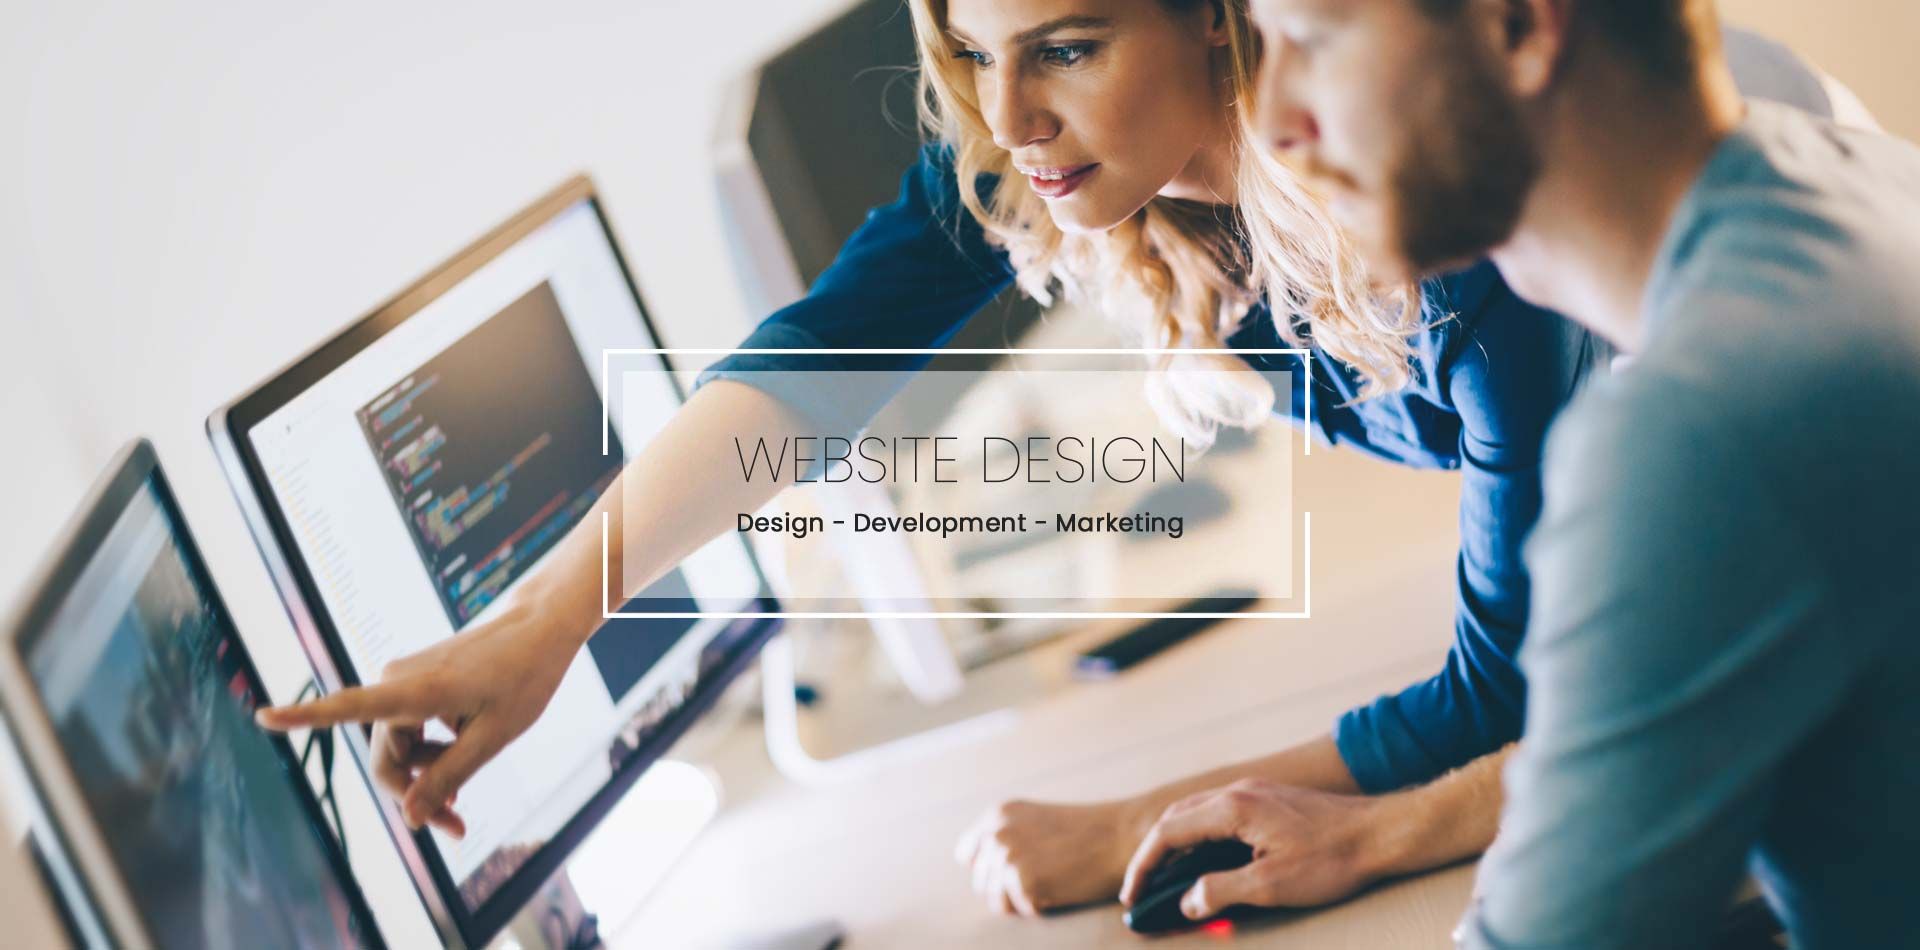 Δημιουργία ιστοσελίδων - Website Design